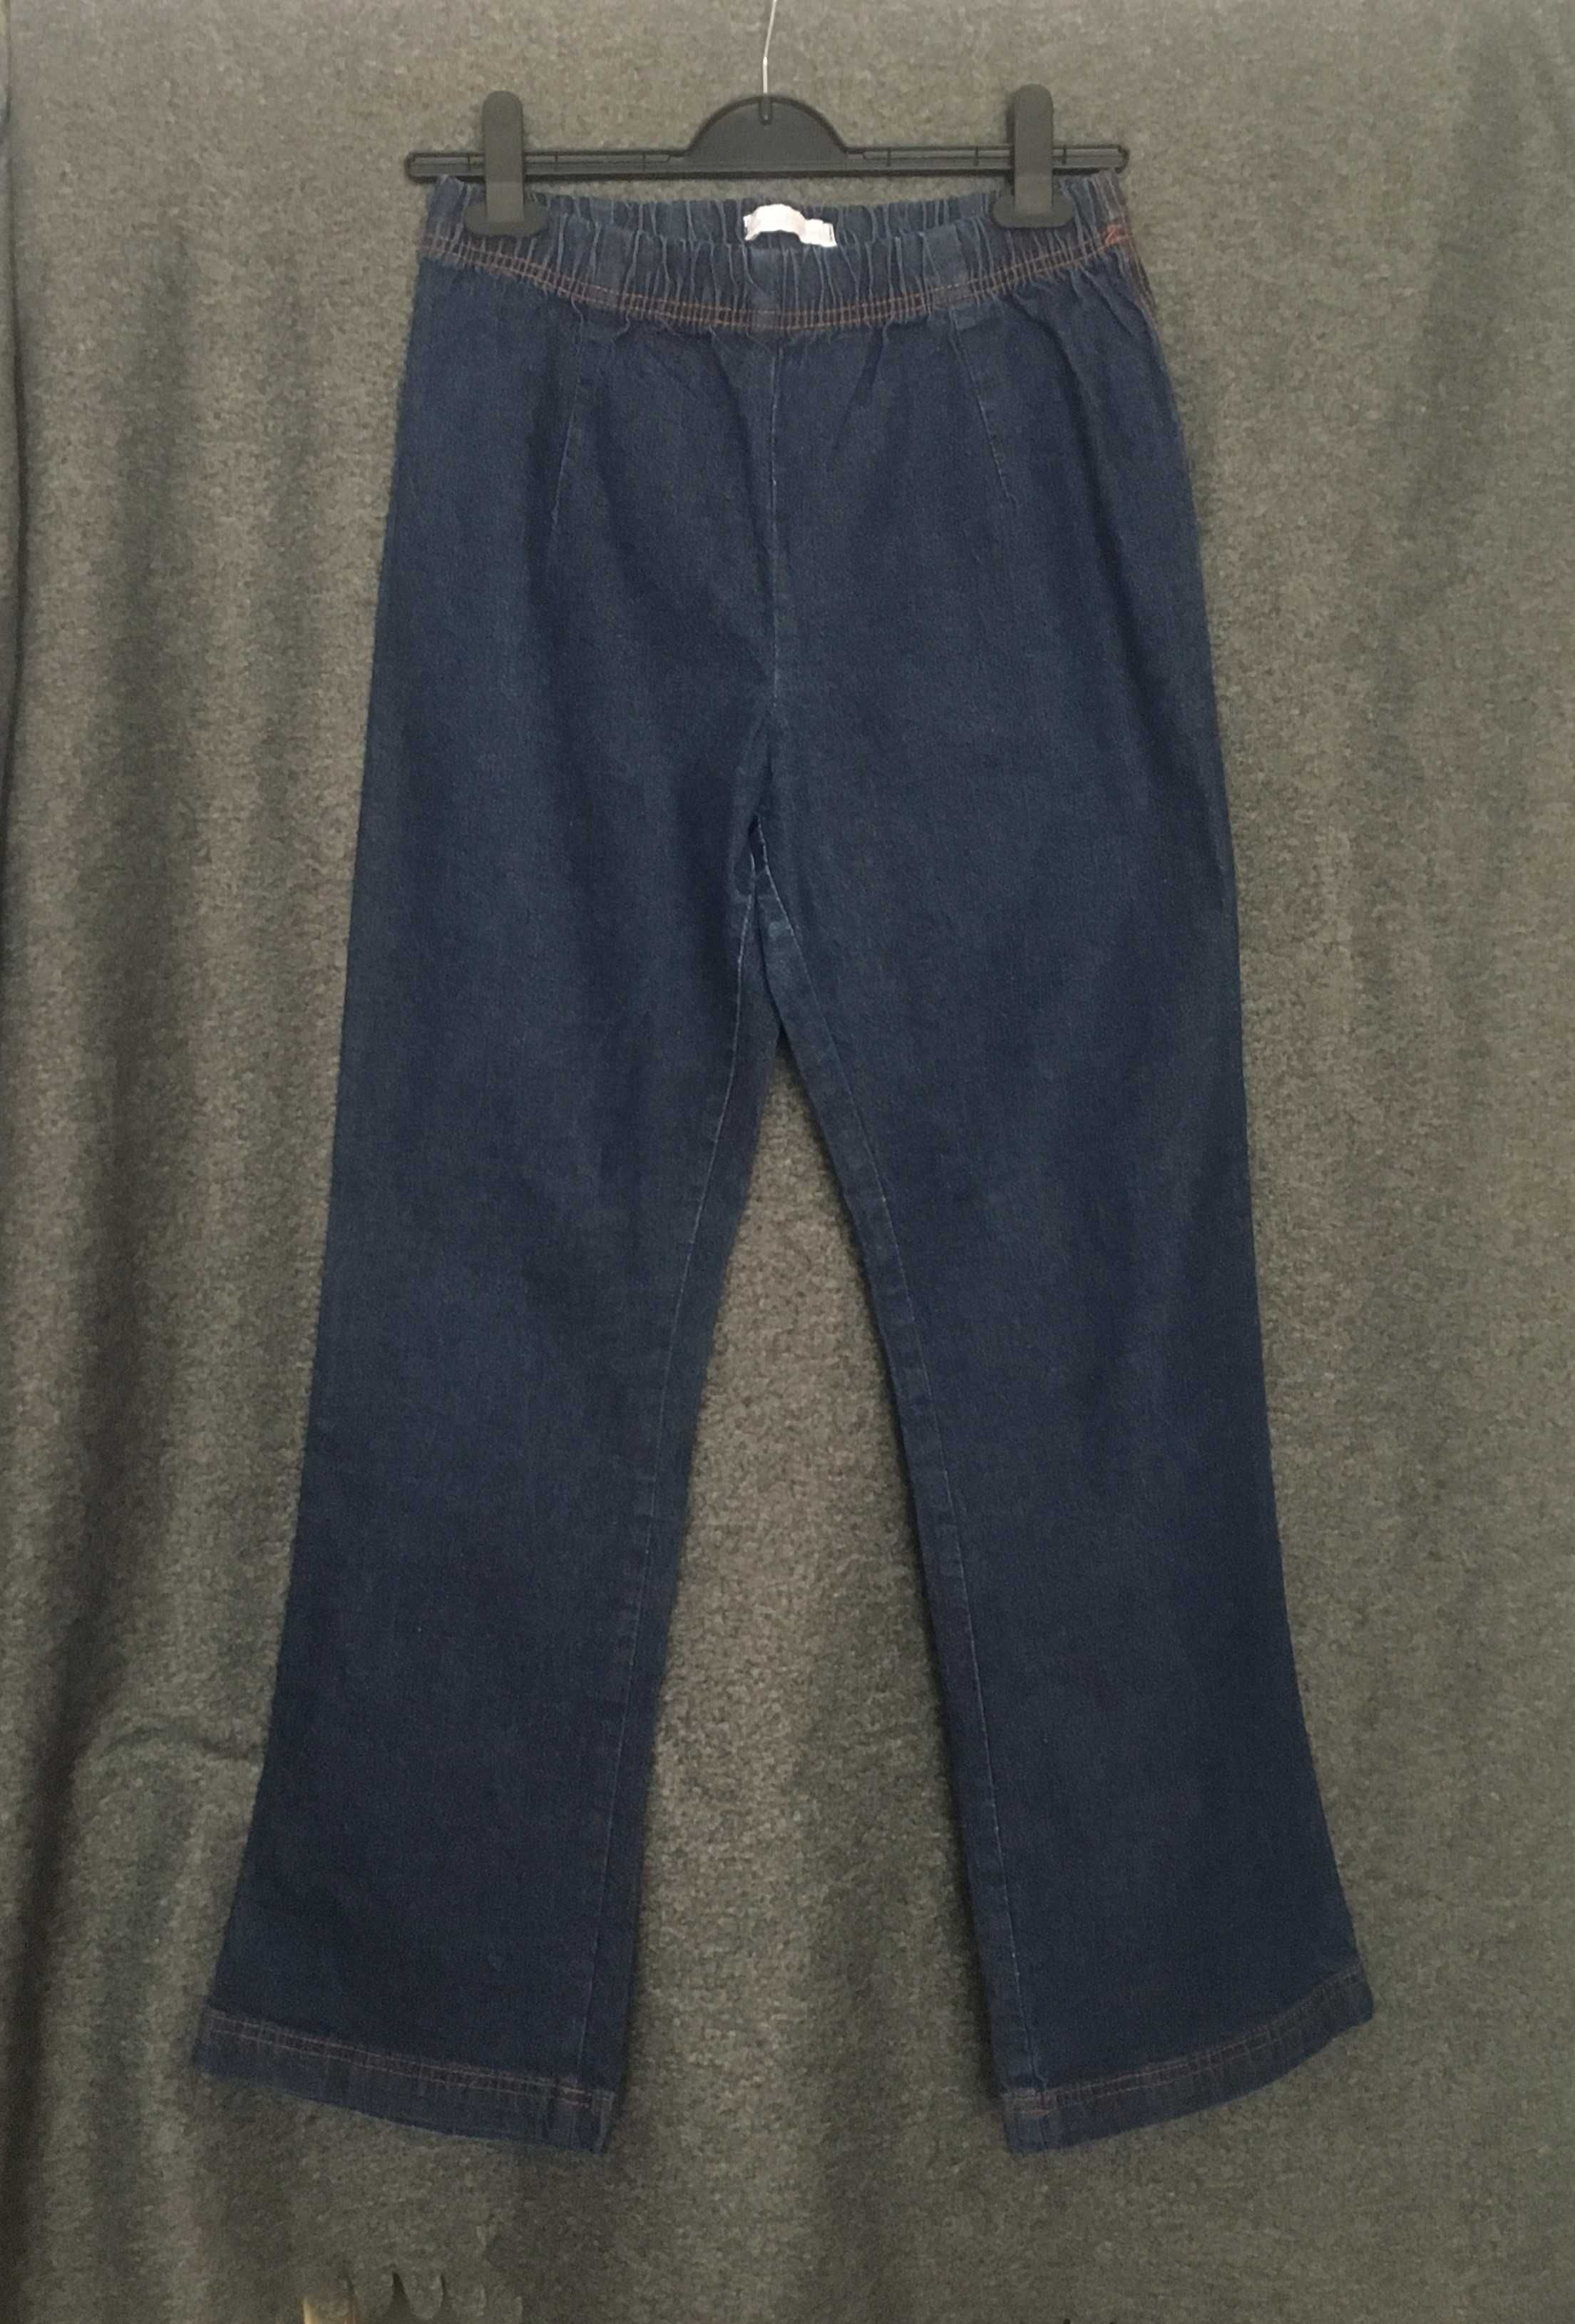 Spodnie damskie od firmy Casual Comfort